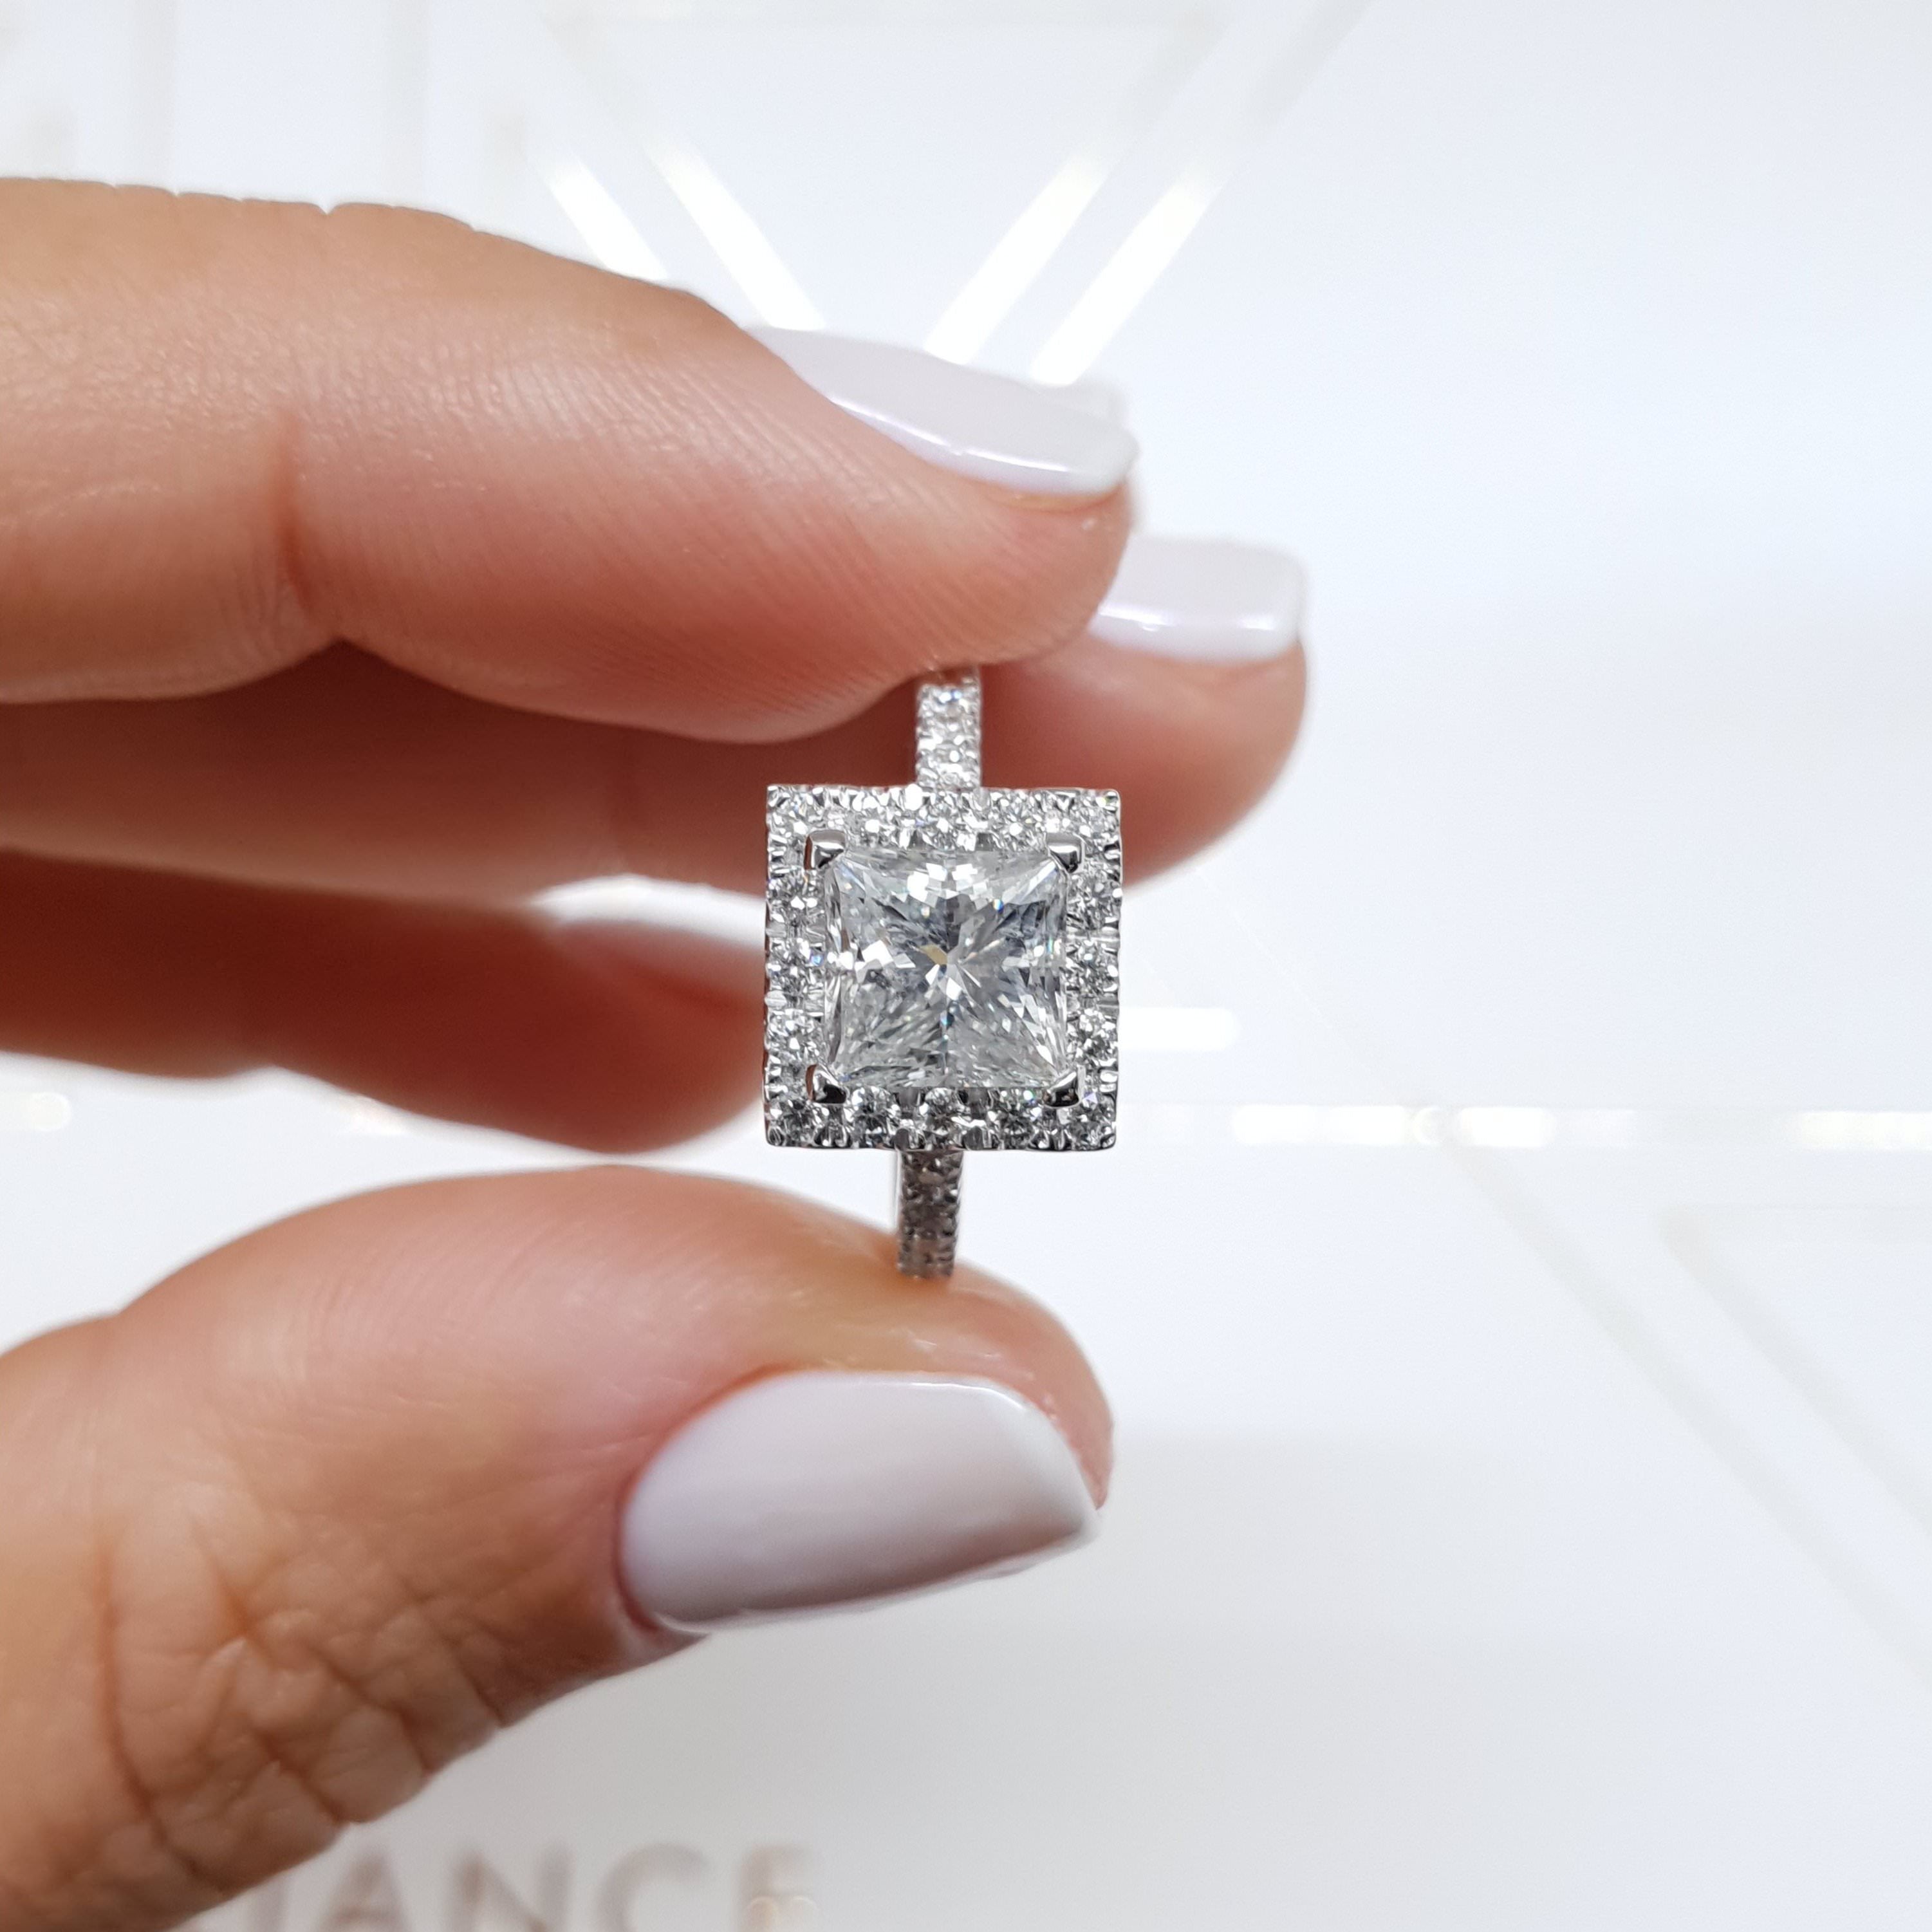 Patricia Lab Grown Diamond Ring   (2.5 Carat) -14K White Gold